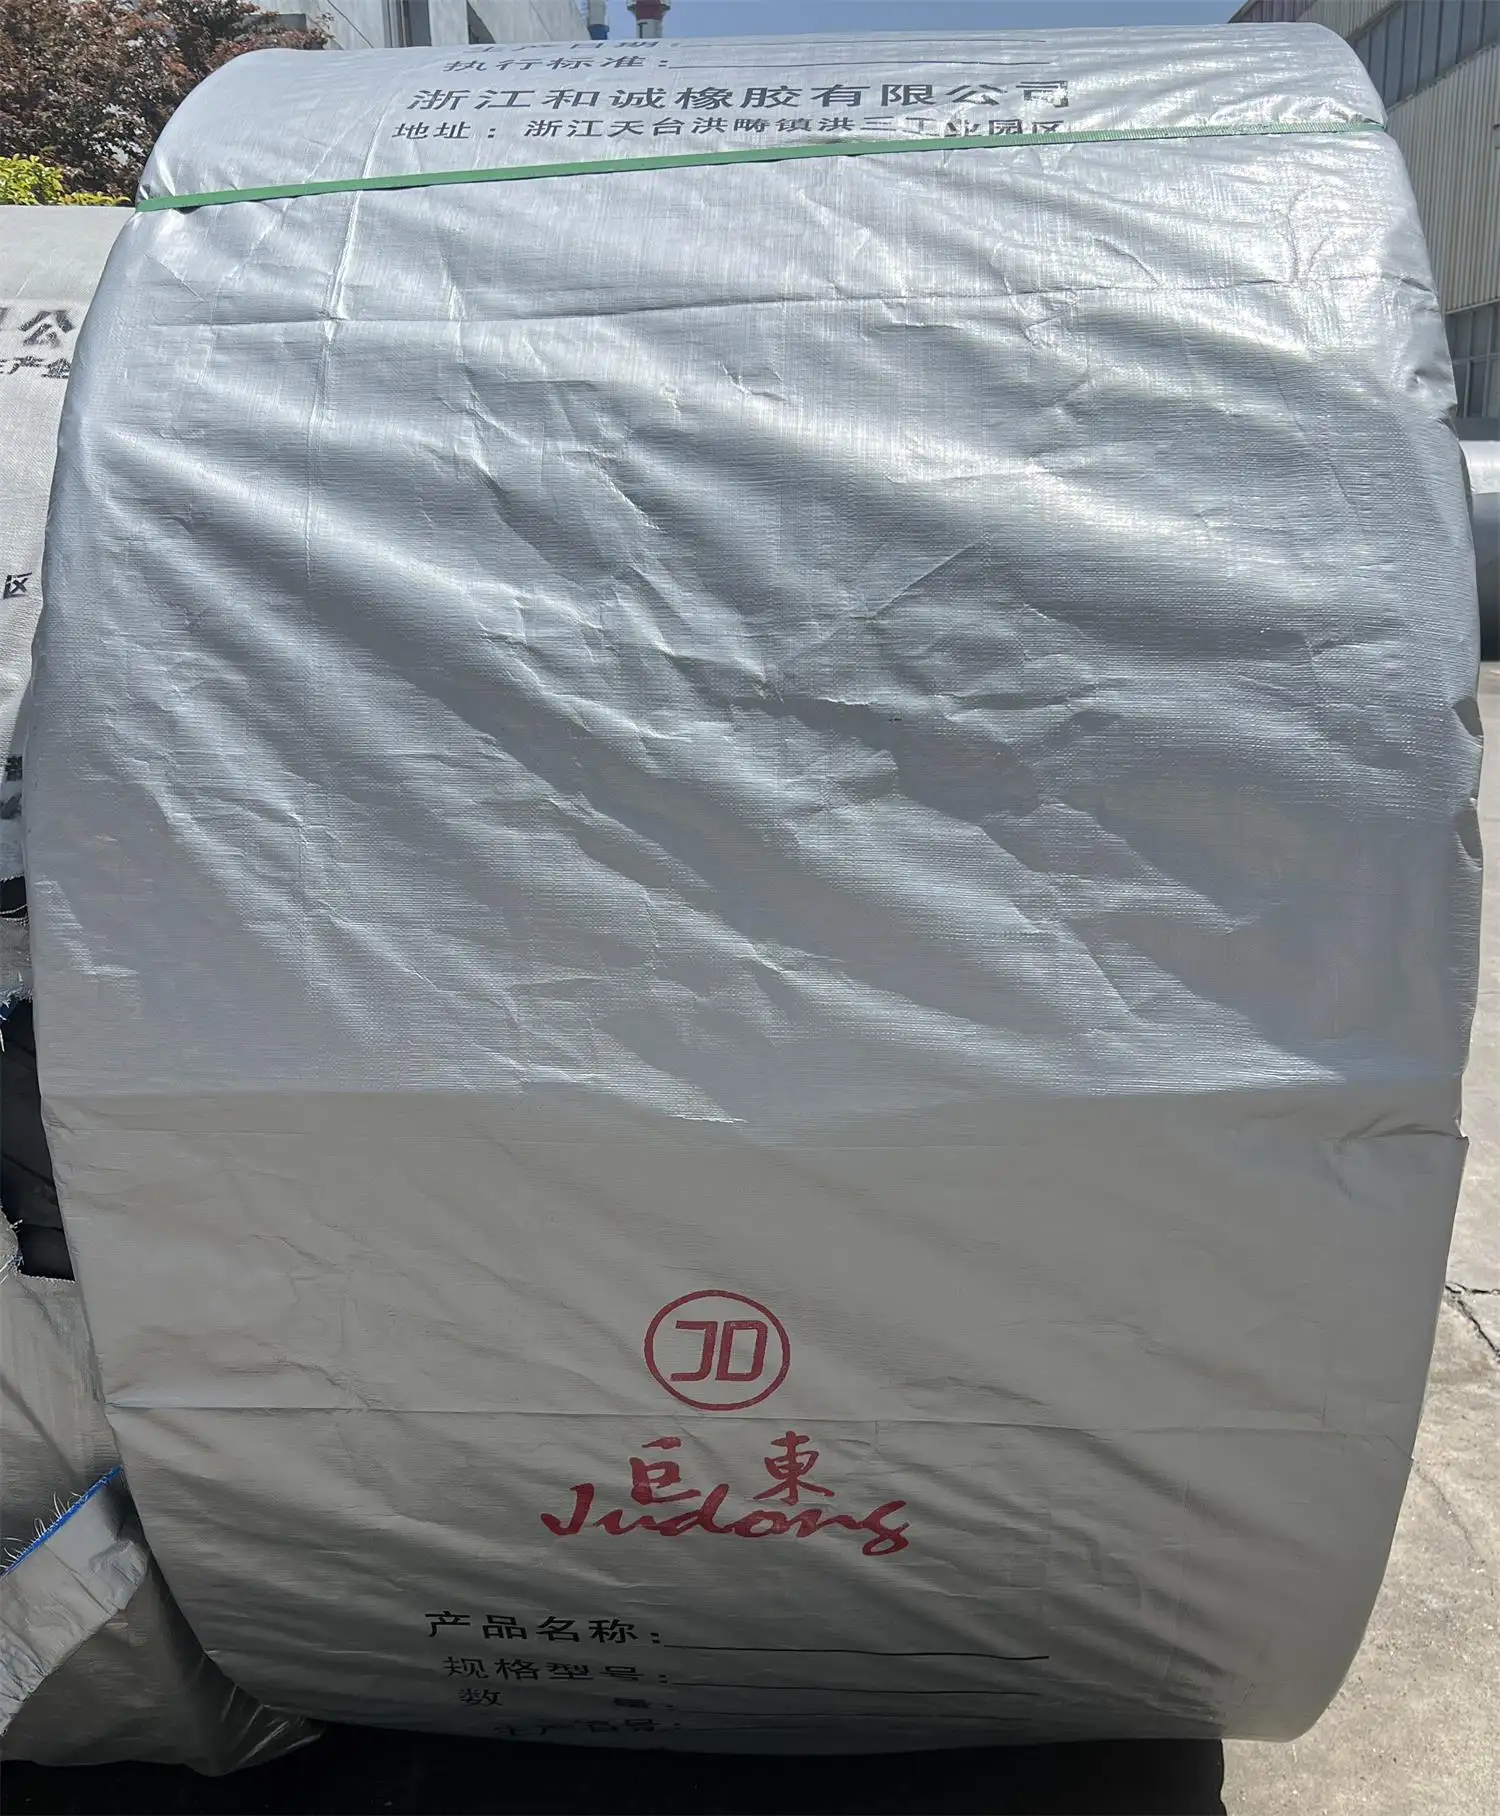 La Chine fournit une bande transporteuse en caoutchouc durable épaissie résistante aux acides/alcalis chimiques